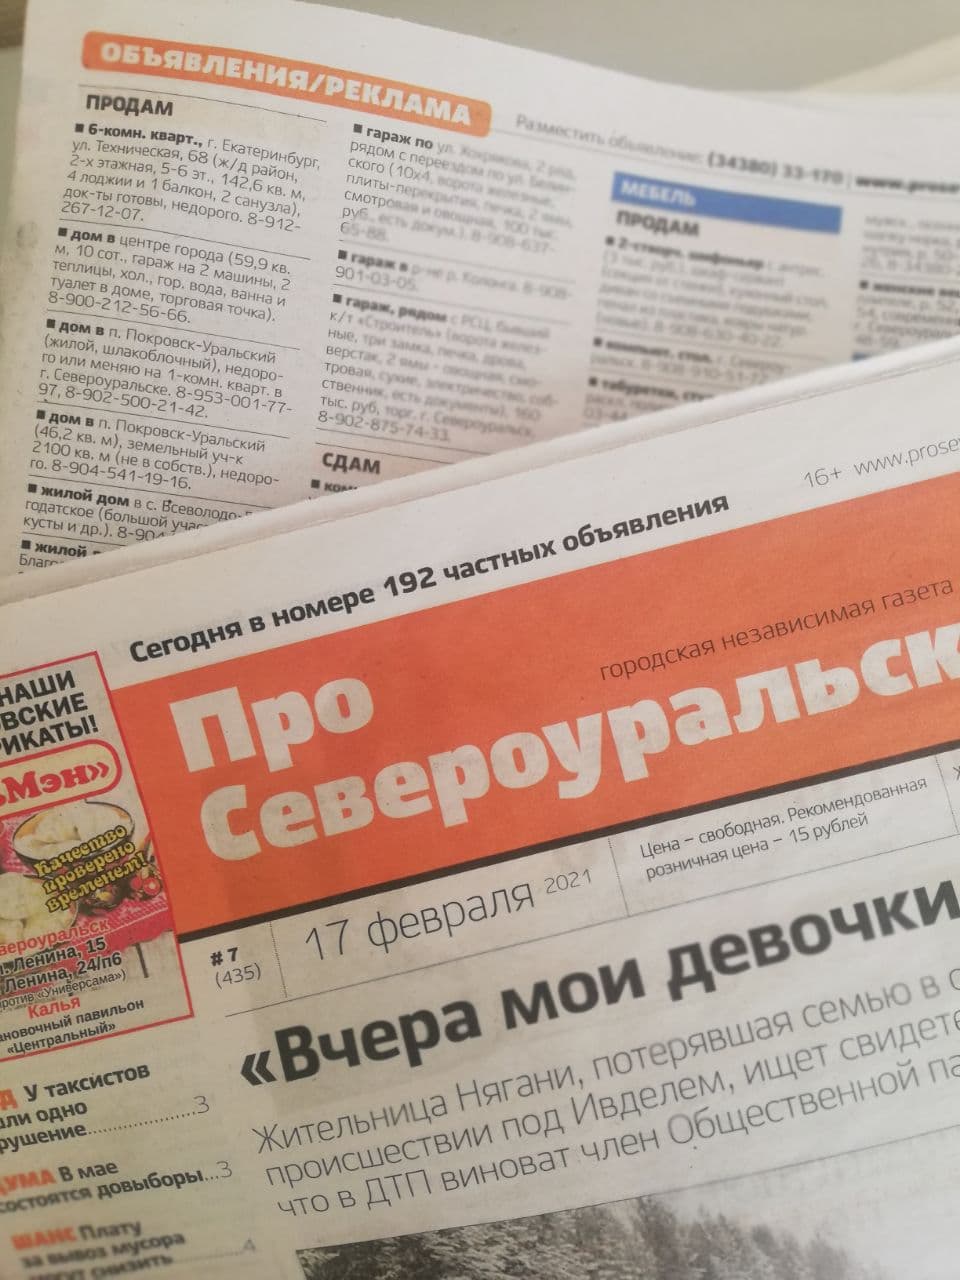 Объявления из газеты "ПроСевероуральск.ru" № 9 от 3 марта 2021 года